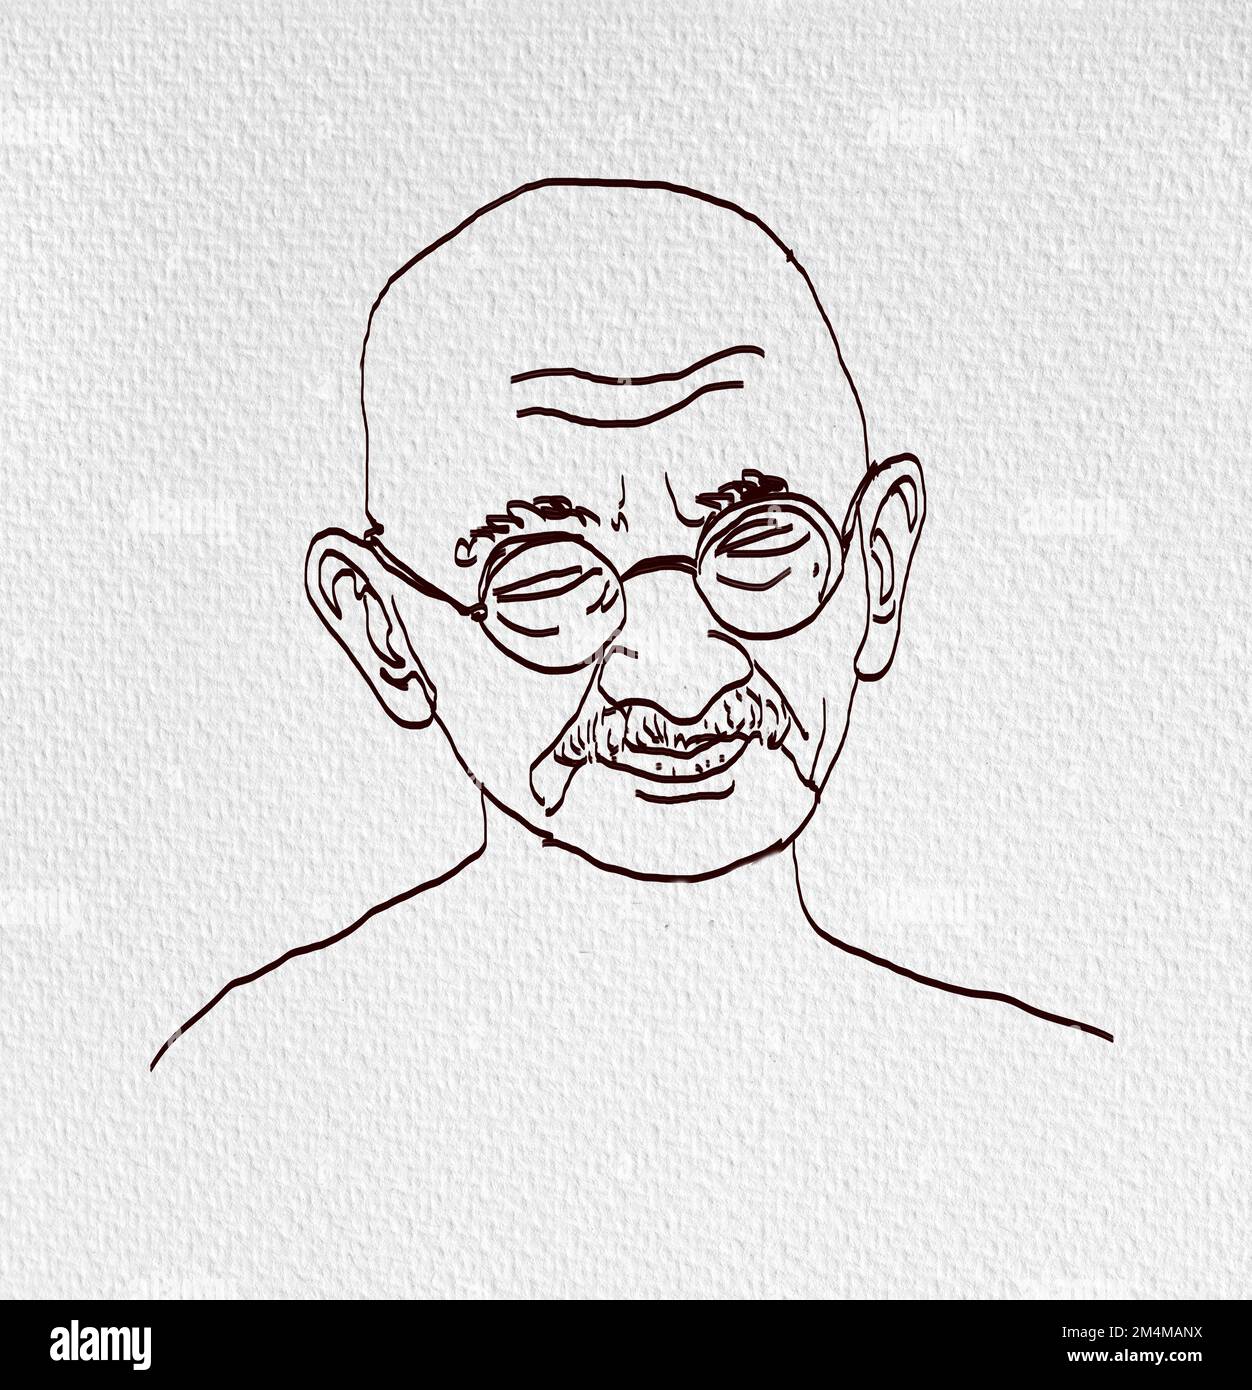 Einfache Linienzeichnung von Mahatma Gandhi, Illustration von Mohandas Karamchand Gandhi oder mahatma Gandhi, großer indischer Freiheitskämpfer, der befördert hat.Vater Stockfoto